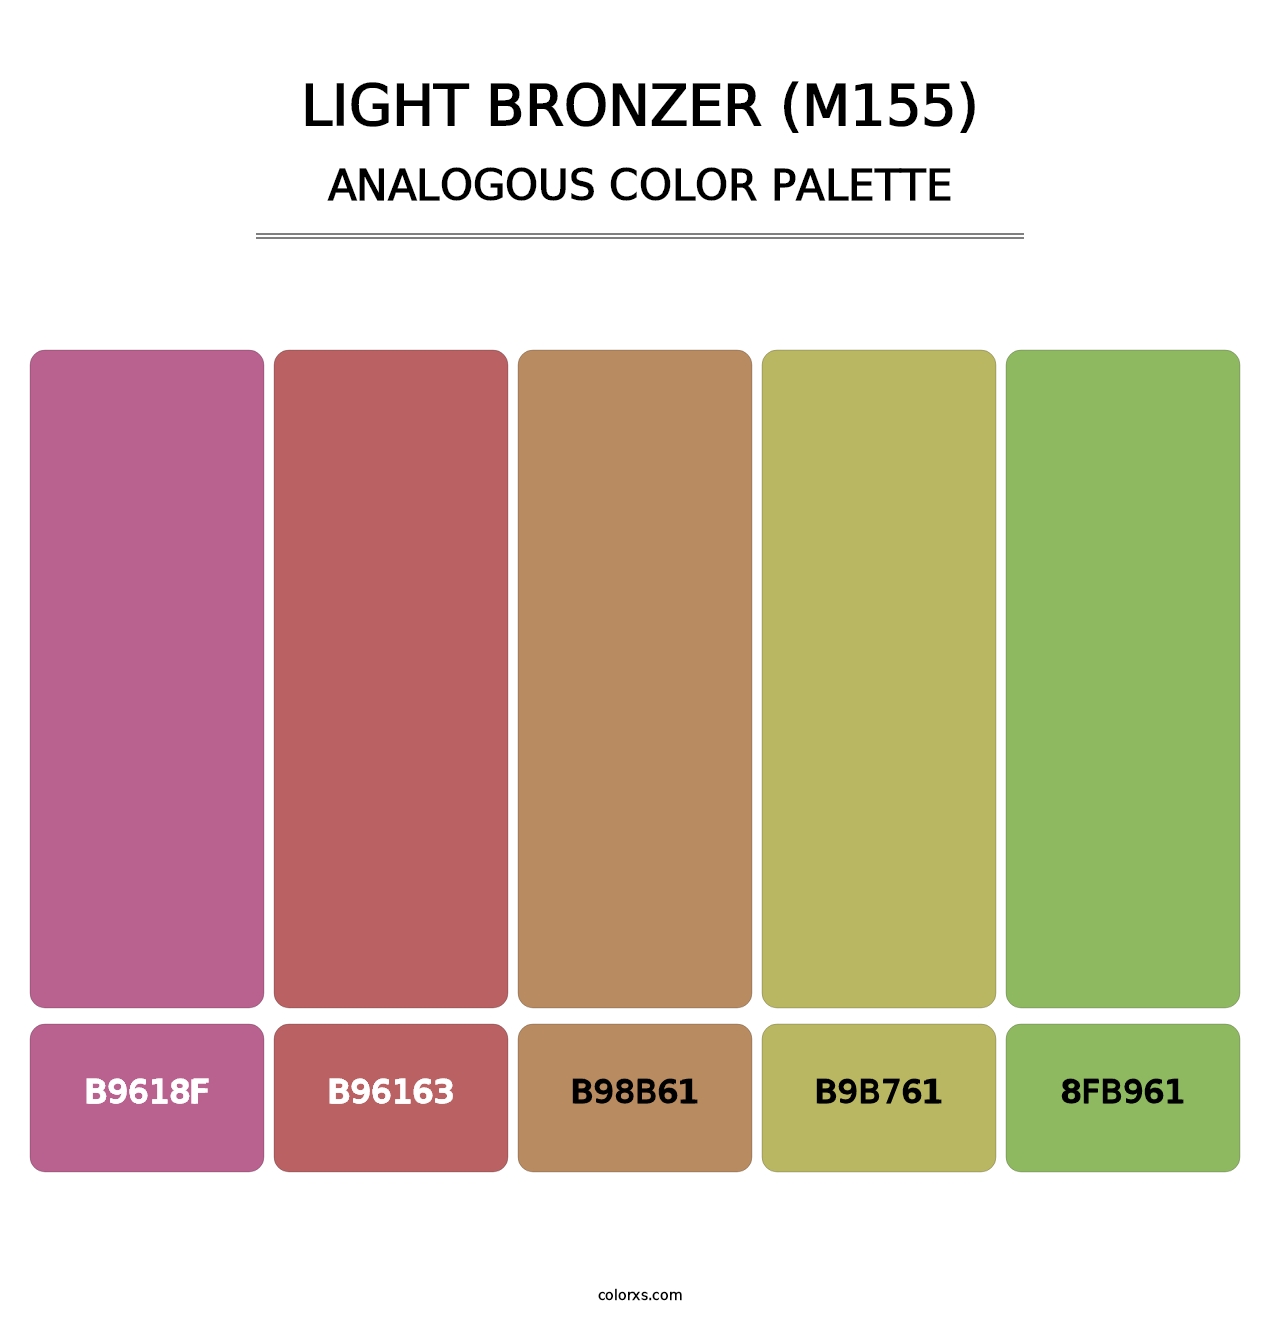 Light Bronzer (M155) - Analogous Color Palette